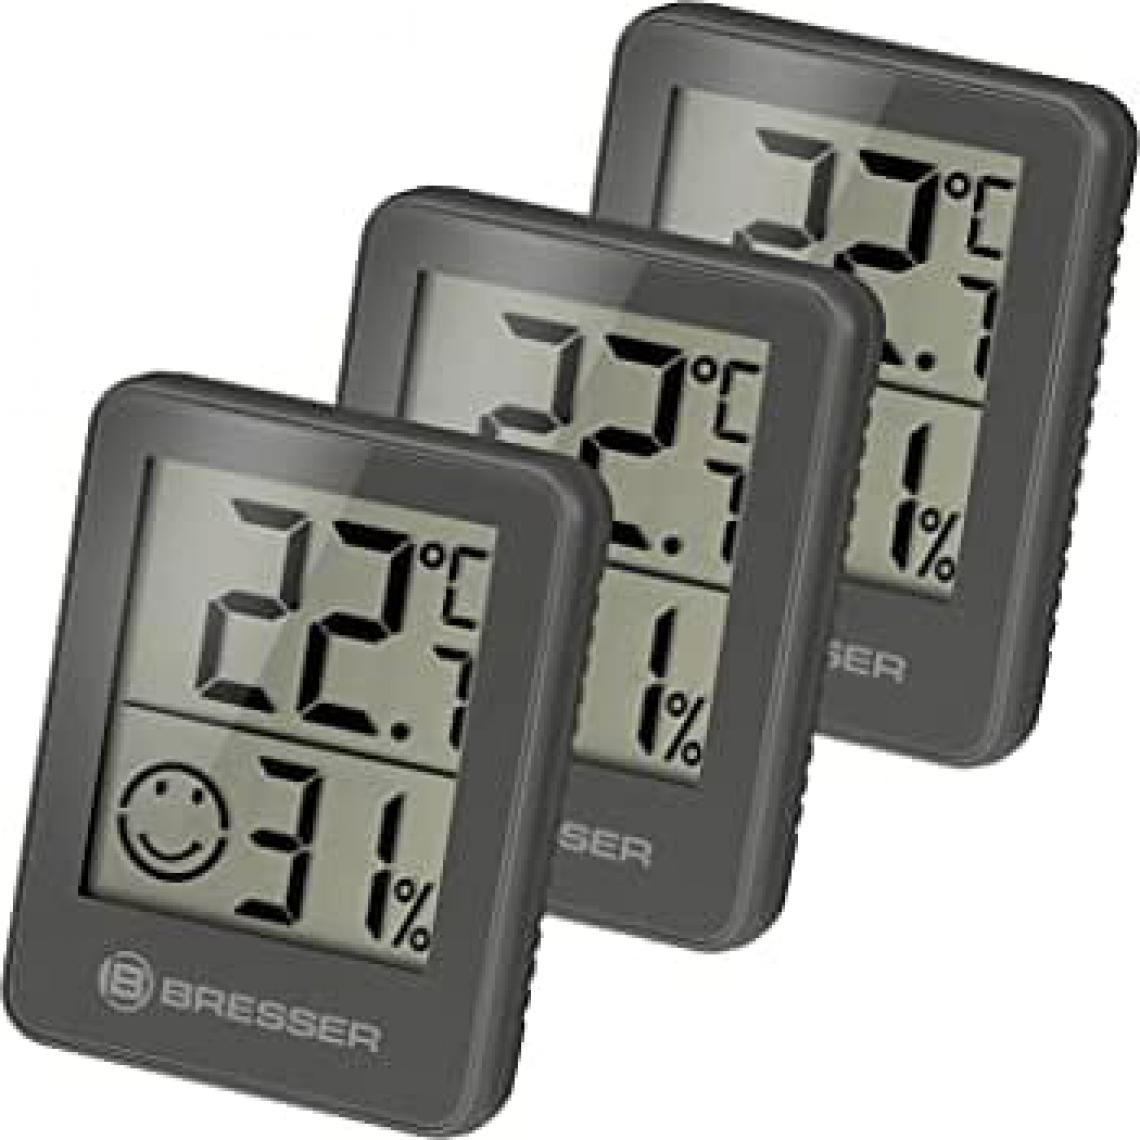 Bresser - Lot de 3 Thermomètres et Hygromètres avec affichage LCD noir - Bresser - Météo connectée